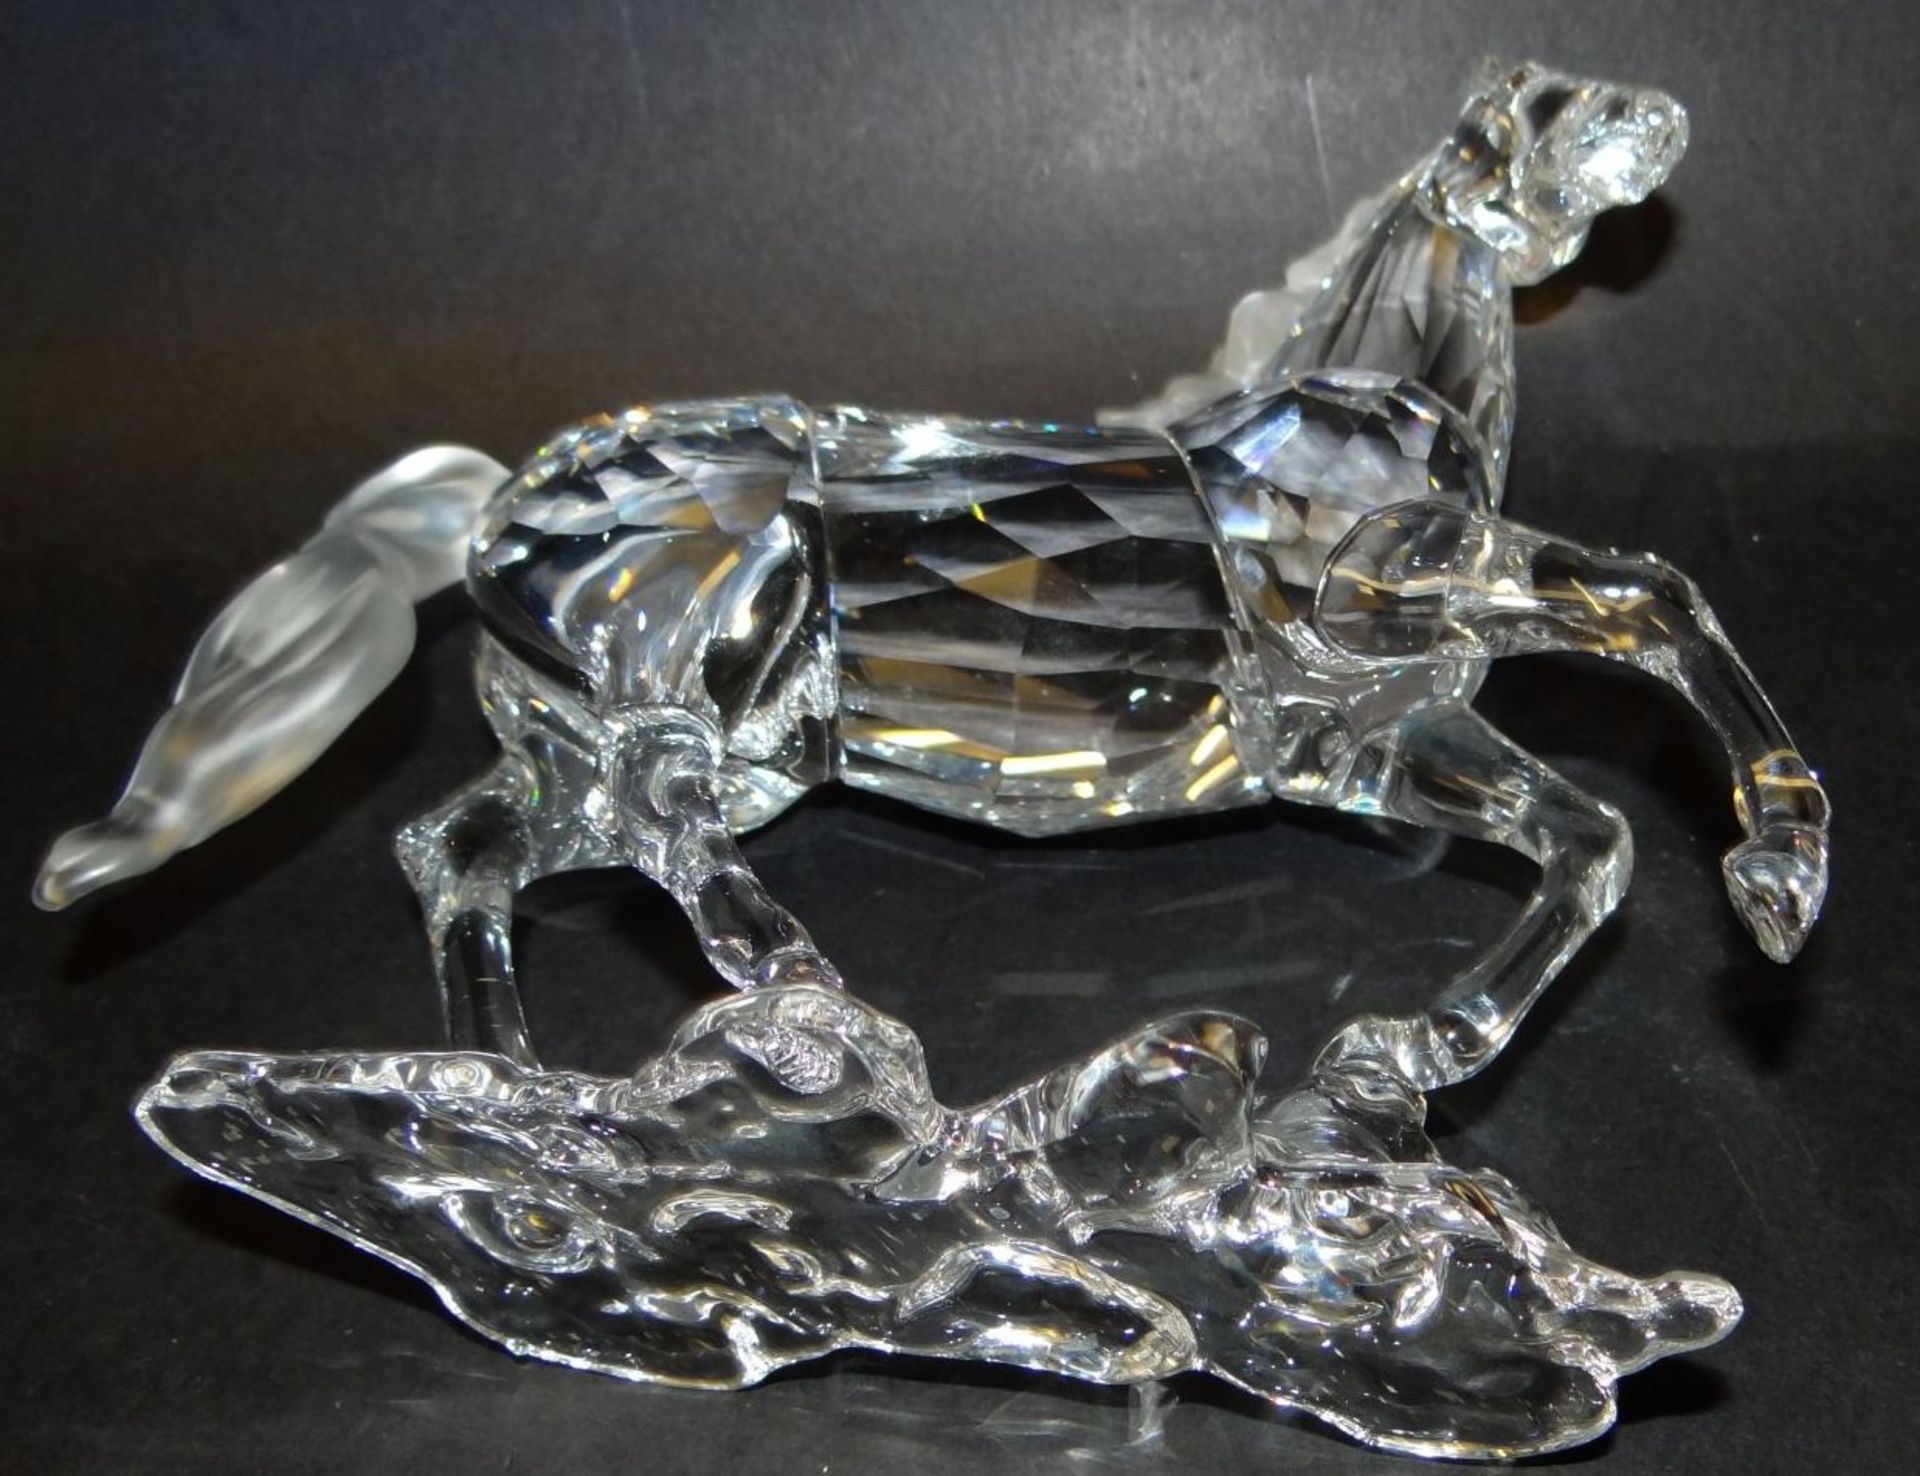 grosses Pferd von Swarowski, in orig. Kasten, neuwertig, H-15 cm, L-15 cm - Bild 8 aus 8